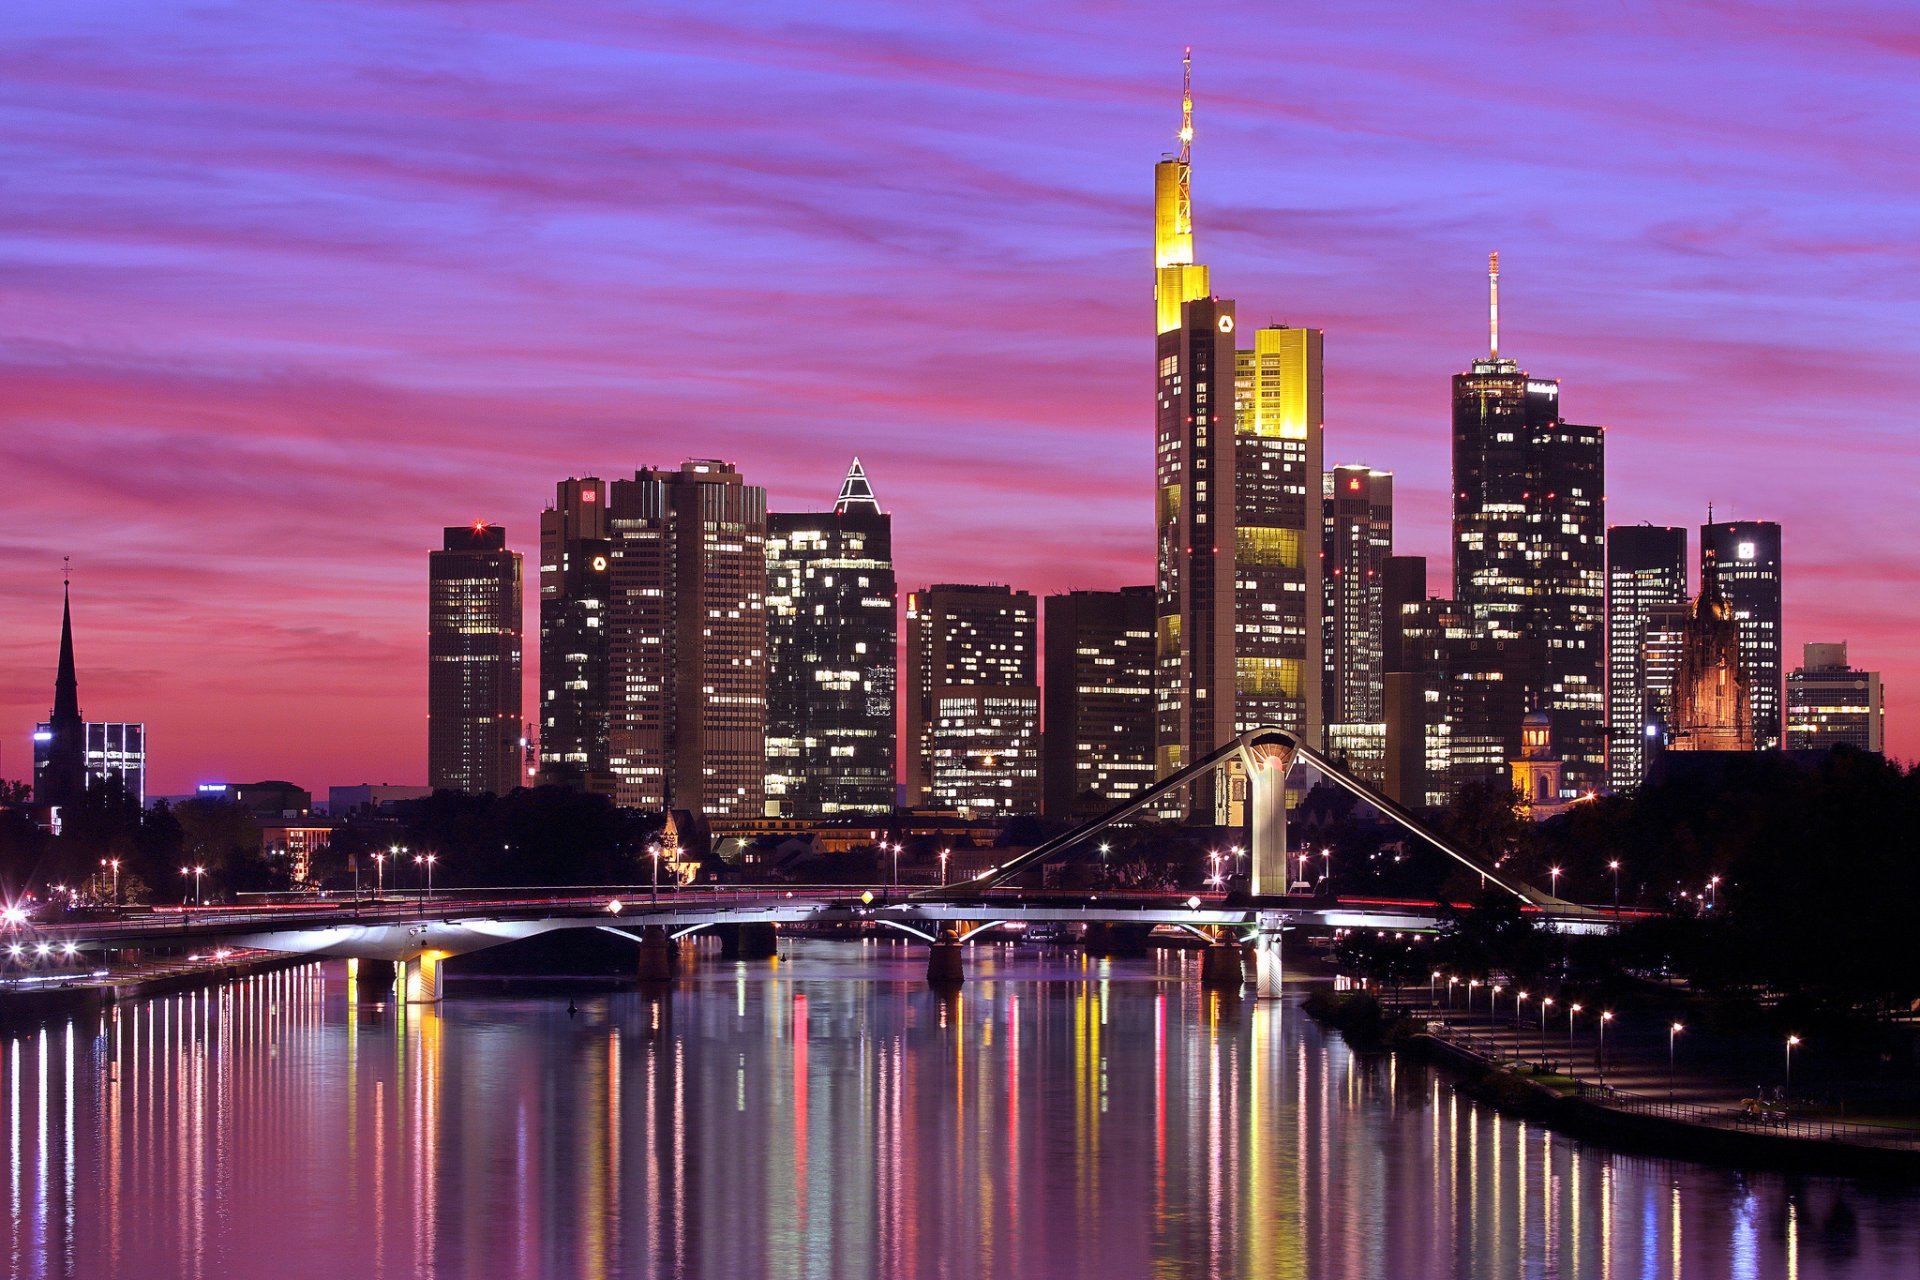 германия франкфурт -на-майне франкфурт-на-майне город река майн мост подсветка огни освещение отражение вечер небо закат здания дома высотки небоскребы